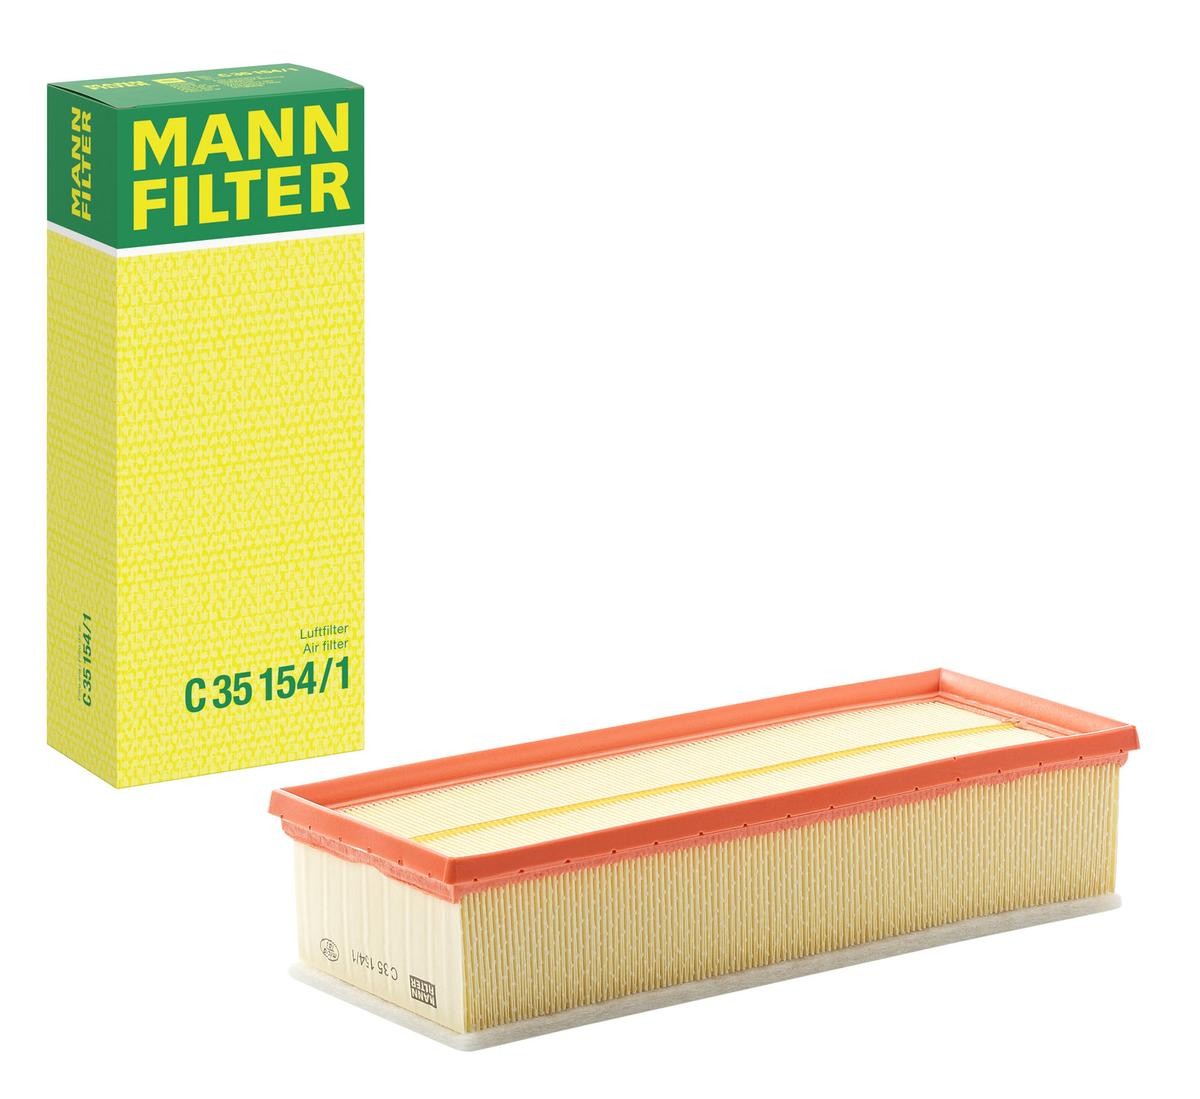 MANN-FILTER Air filter C 35 154/1